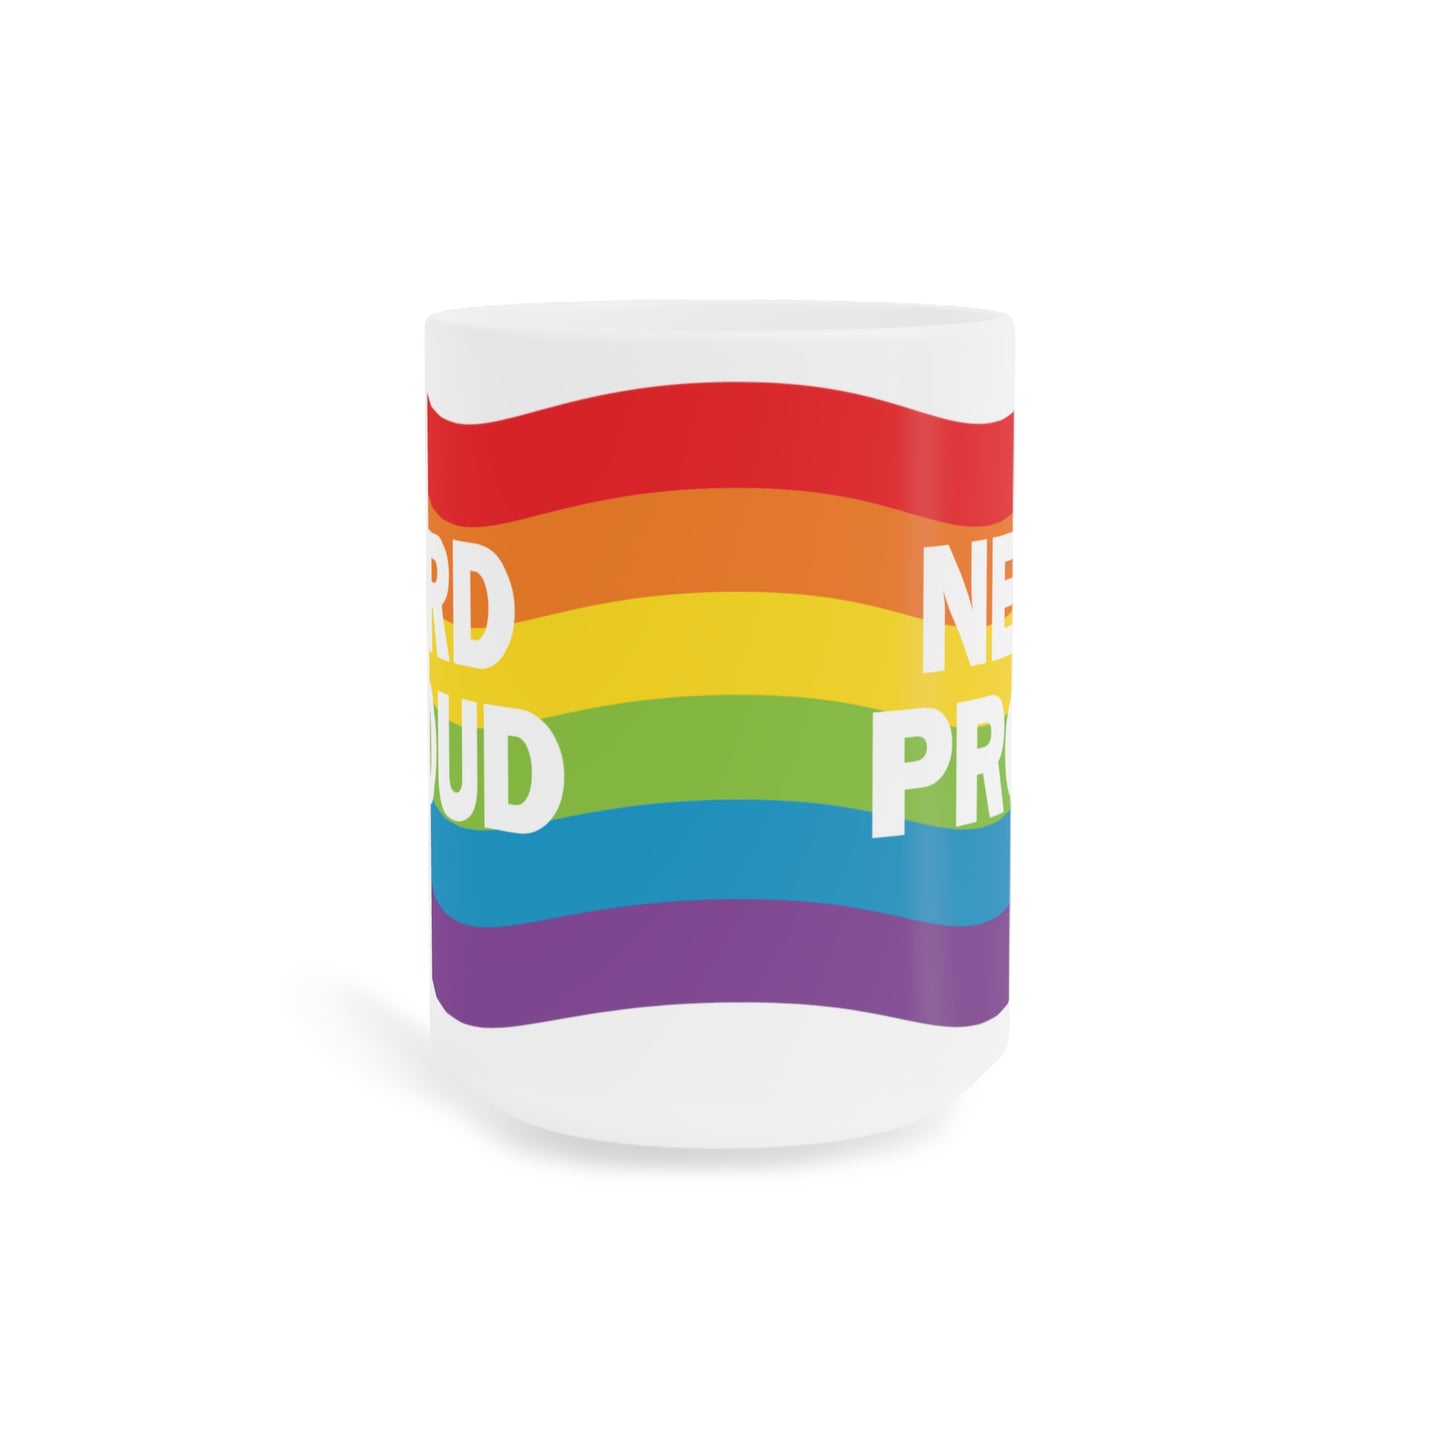 "Nerd Proud" - Ceramic Mugs (11oz/15oz/20oz)